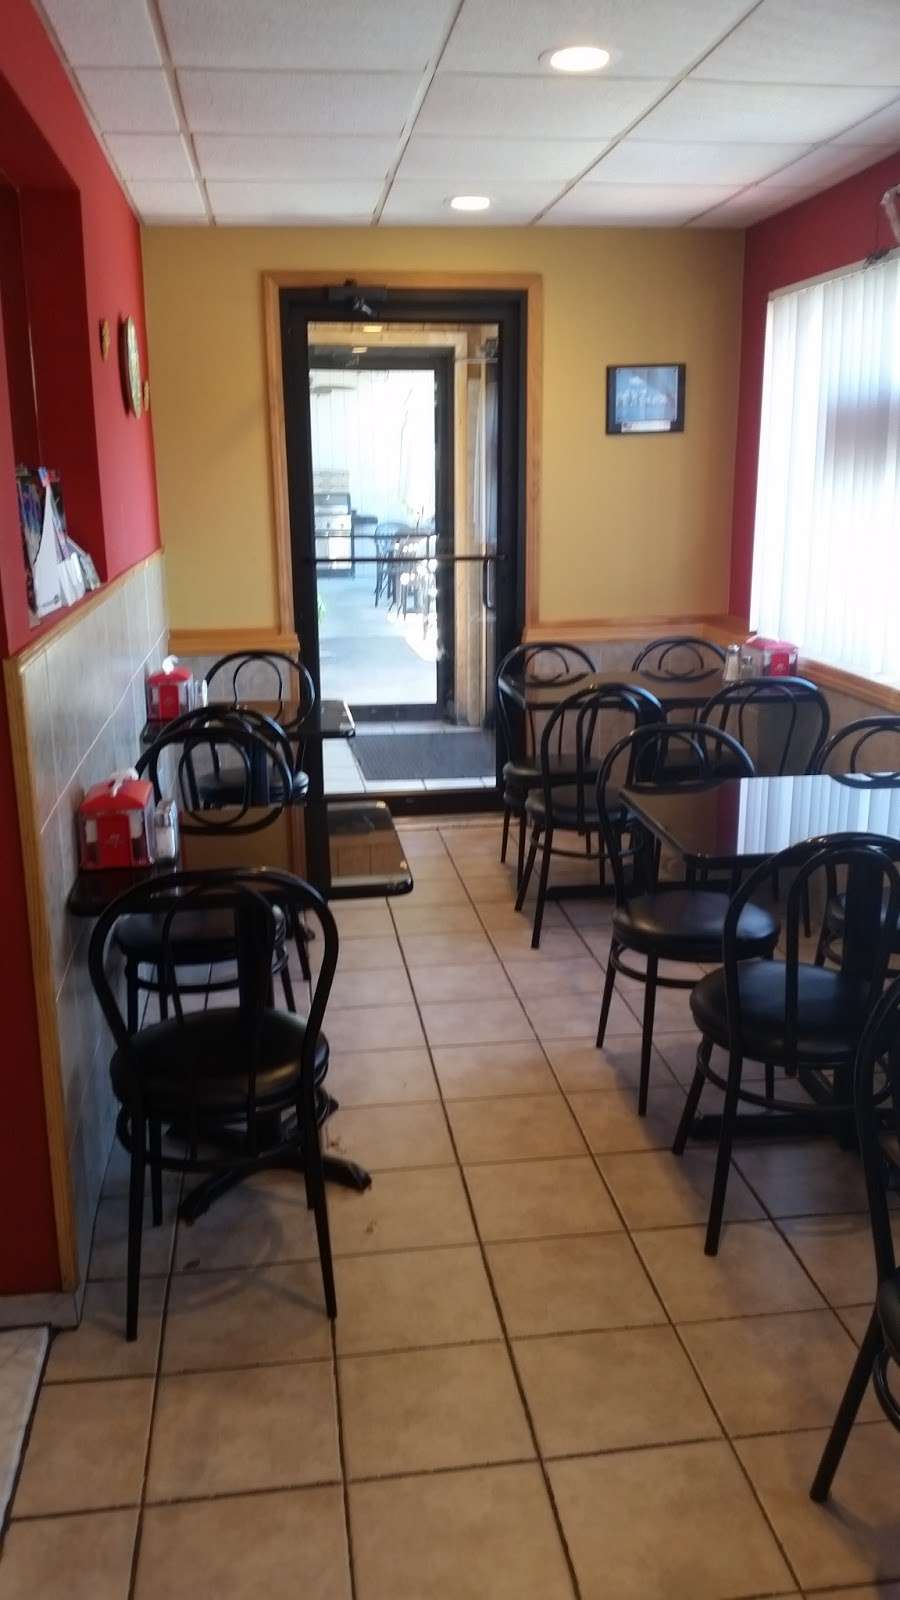 Gaetanos Pizza | 200 North St, Jim Thorpe, PA 18229 | Phone: (570) 325-9411